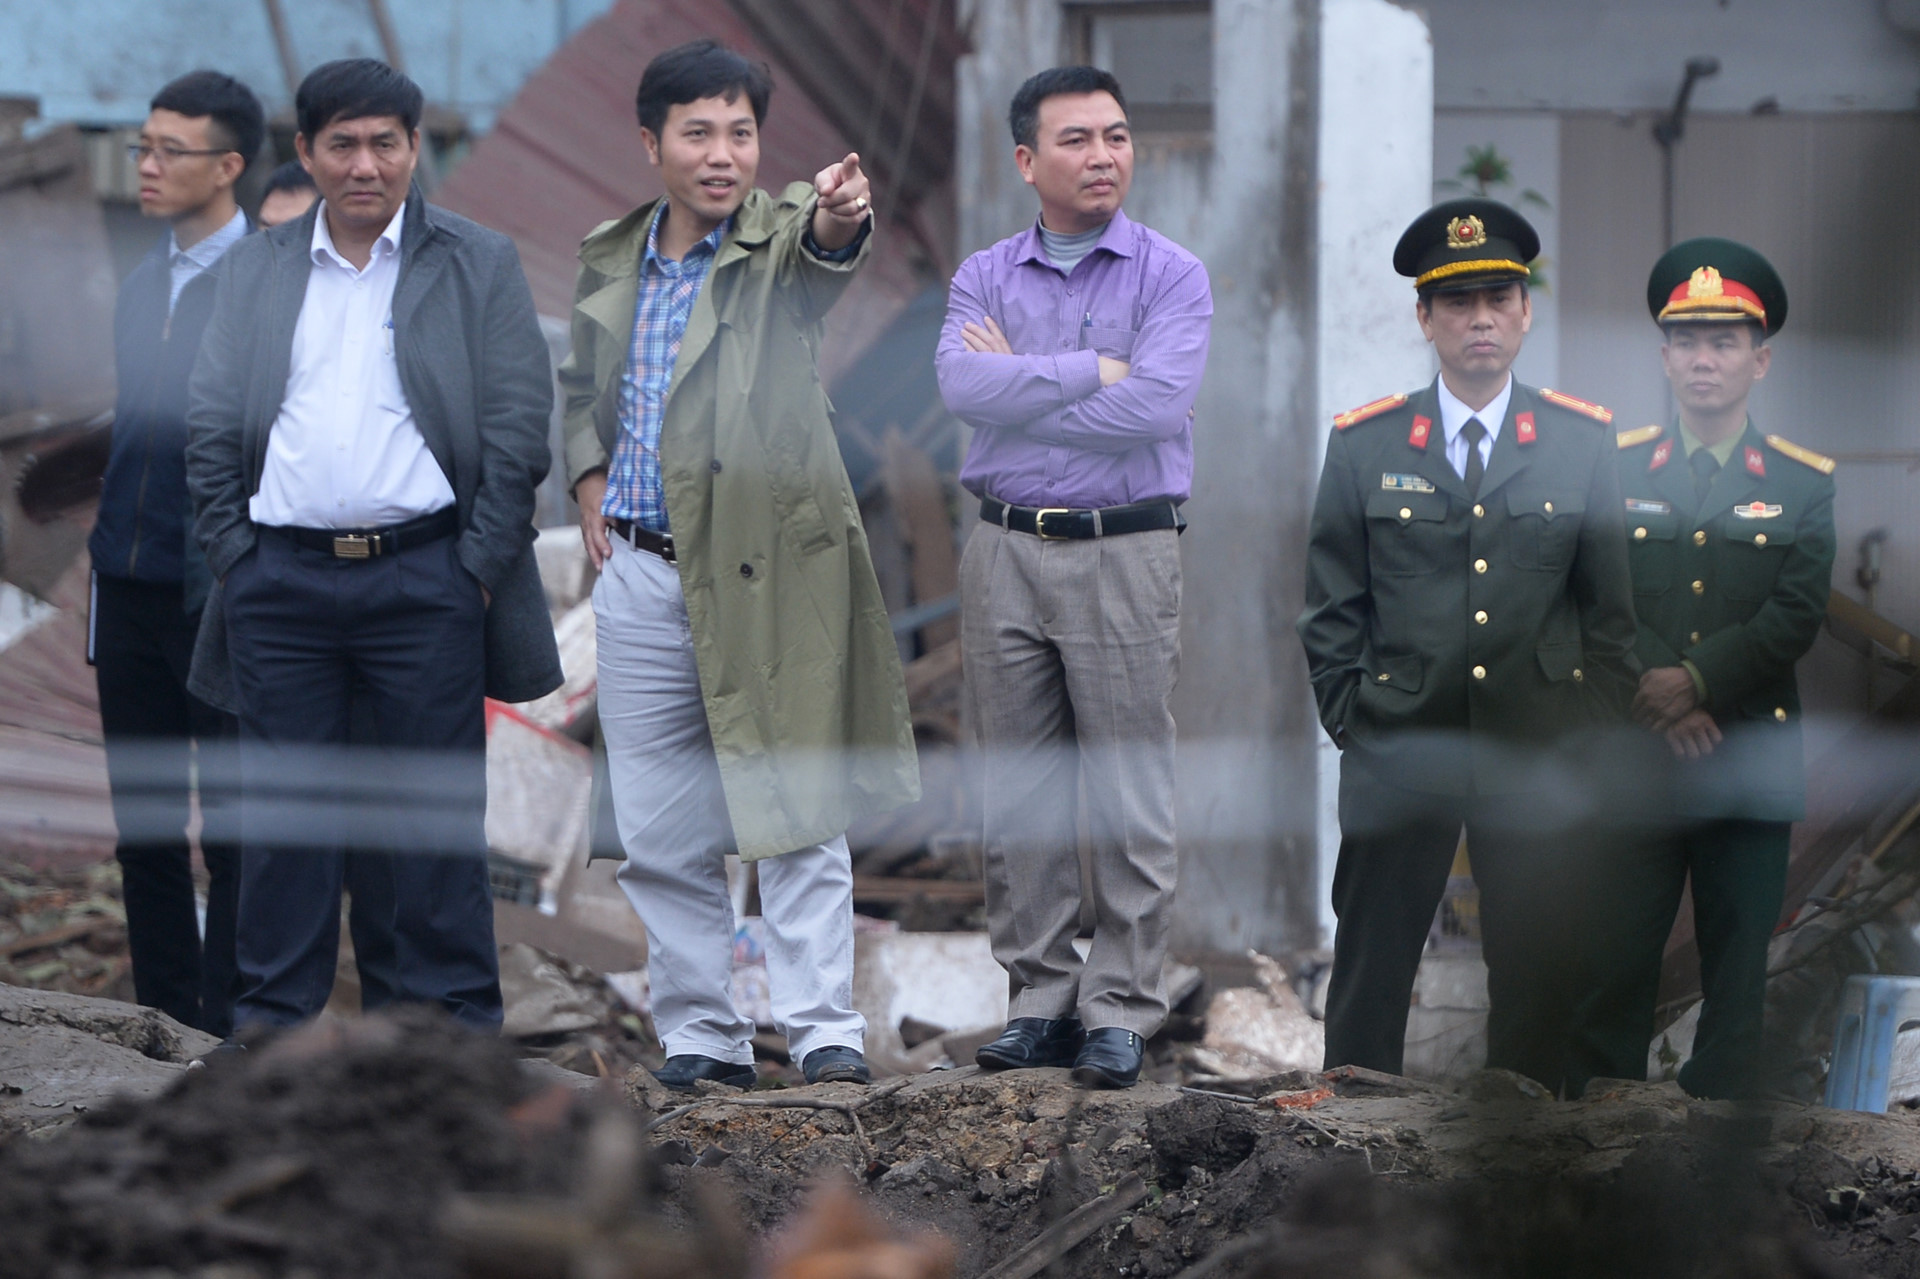 Bộ Quốc phòng điều tra, xác minh nghi vấn mua bom, mìn ở Bắc Ninh